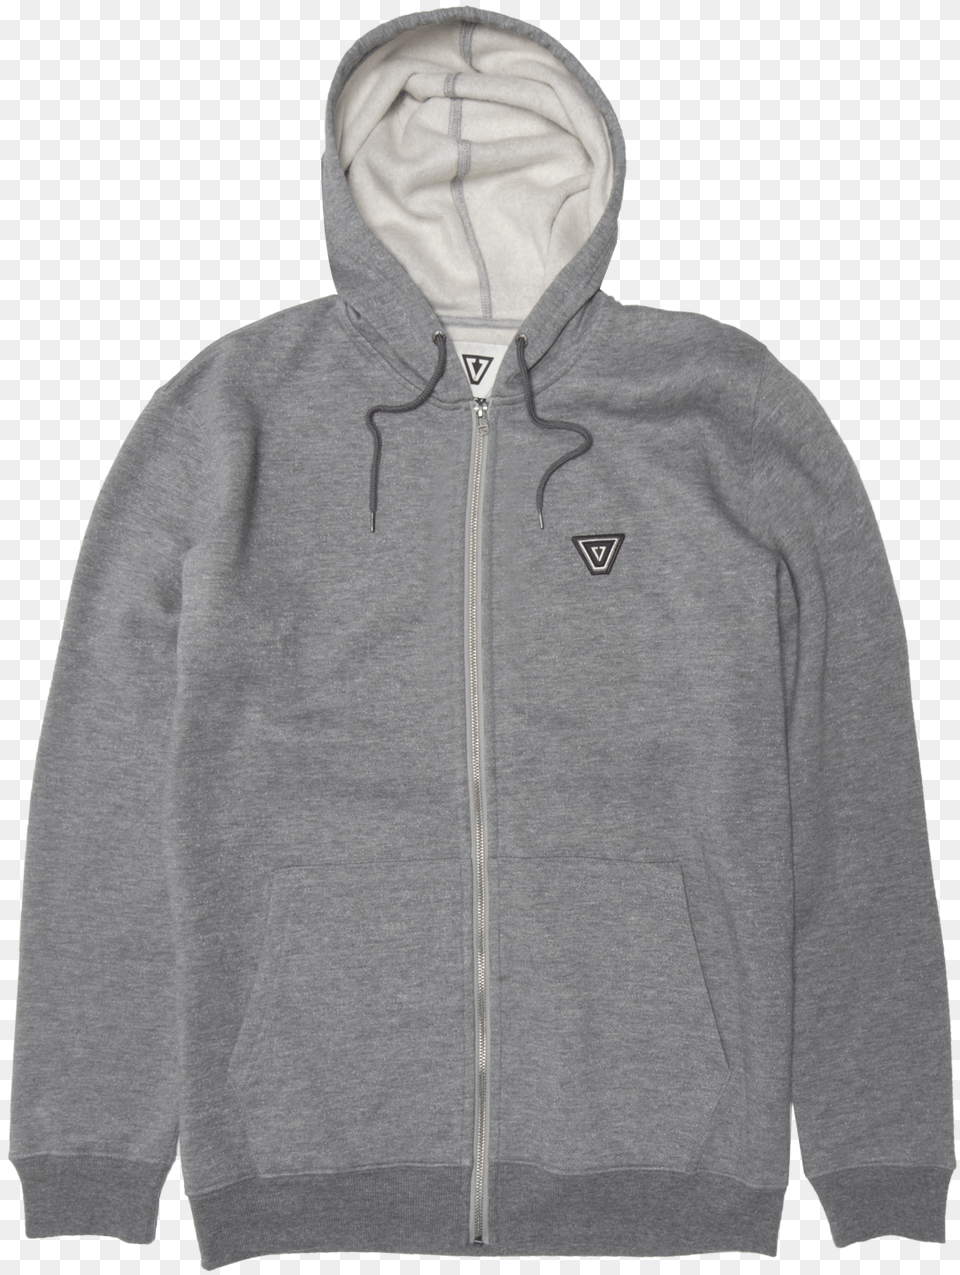 Vissla Grey Hoodie, Clothing, Hood, Knitwear, Sweater Png Image